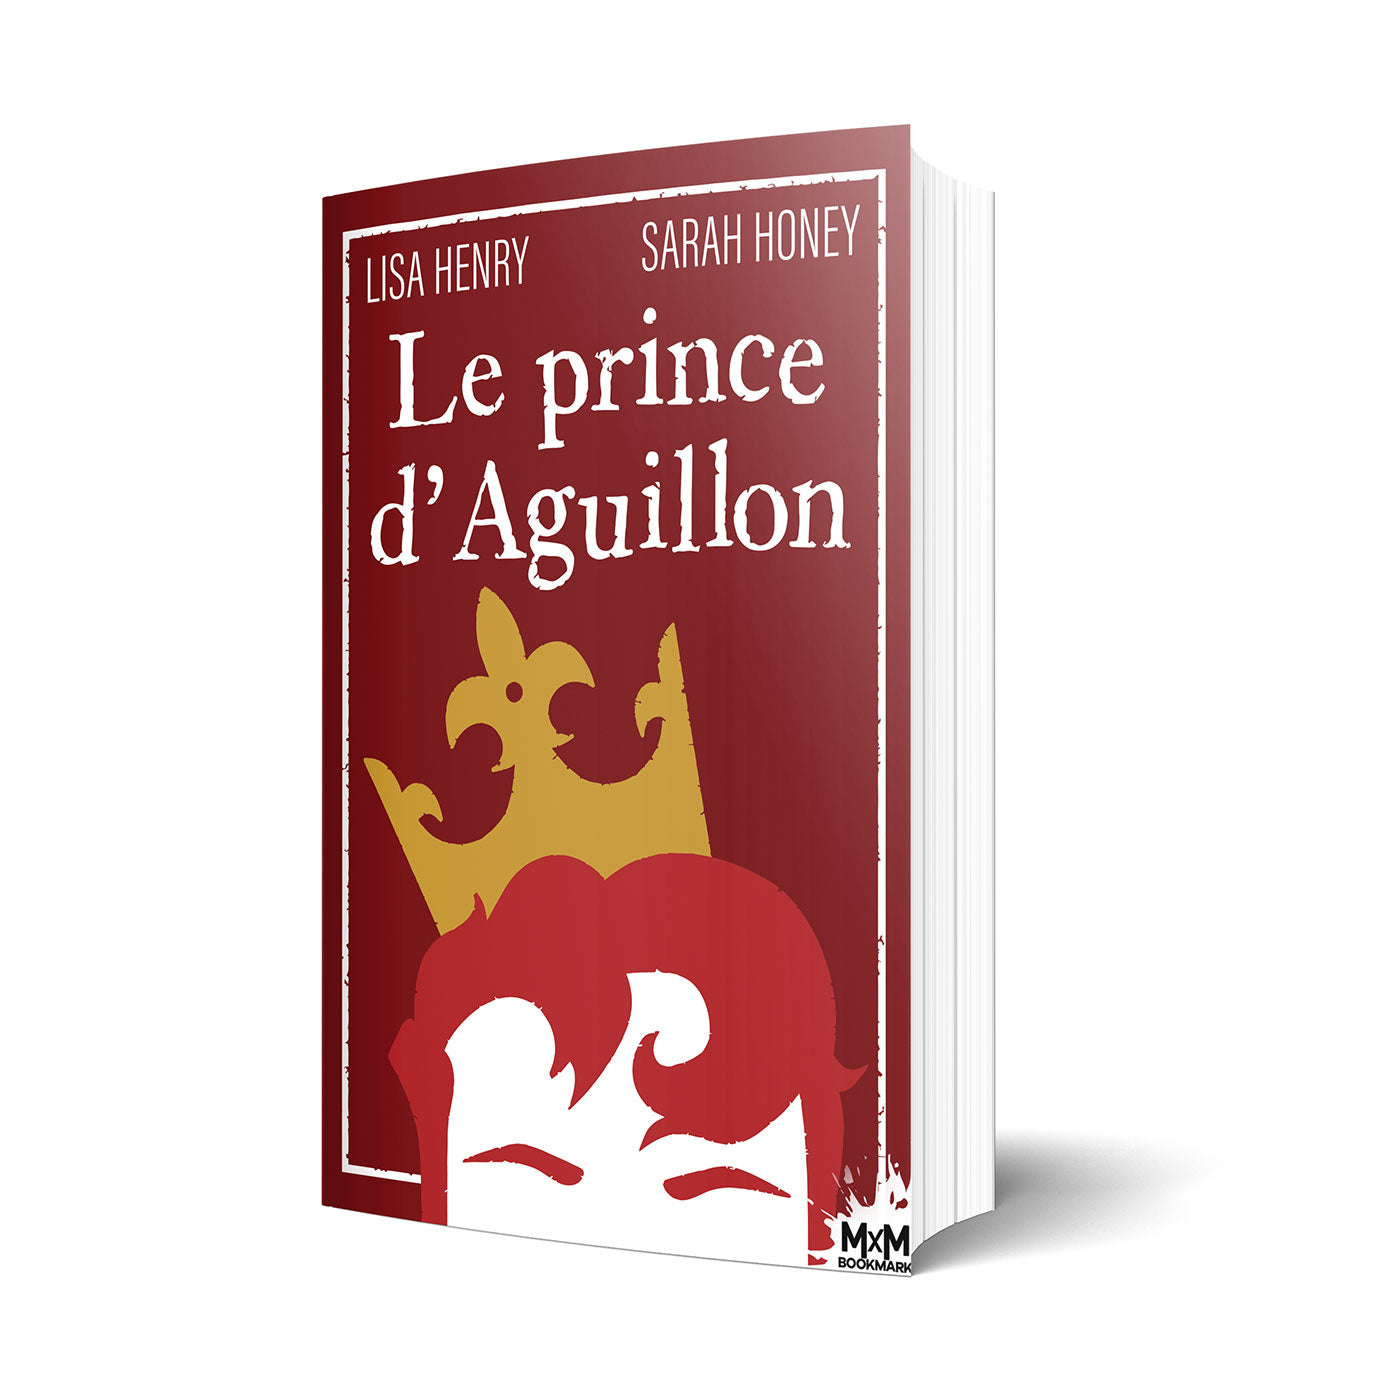 Le prince d'Aguillon - Les éditions Bookmark